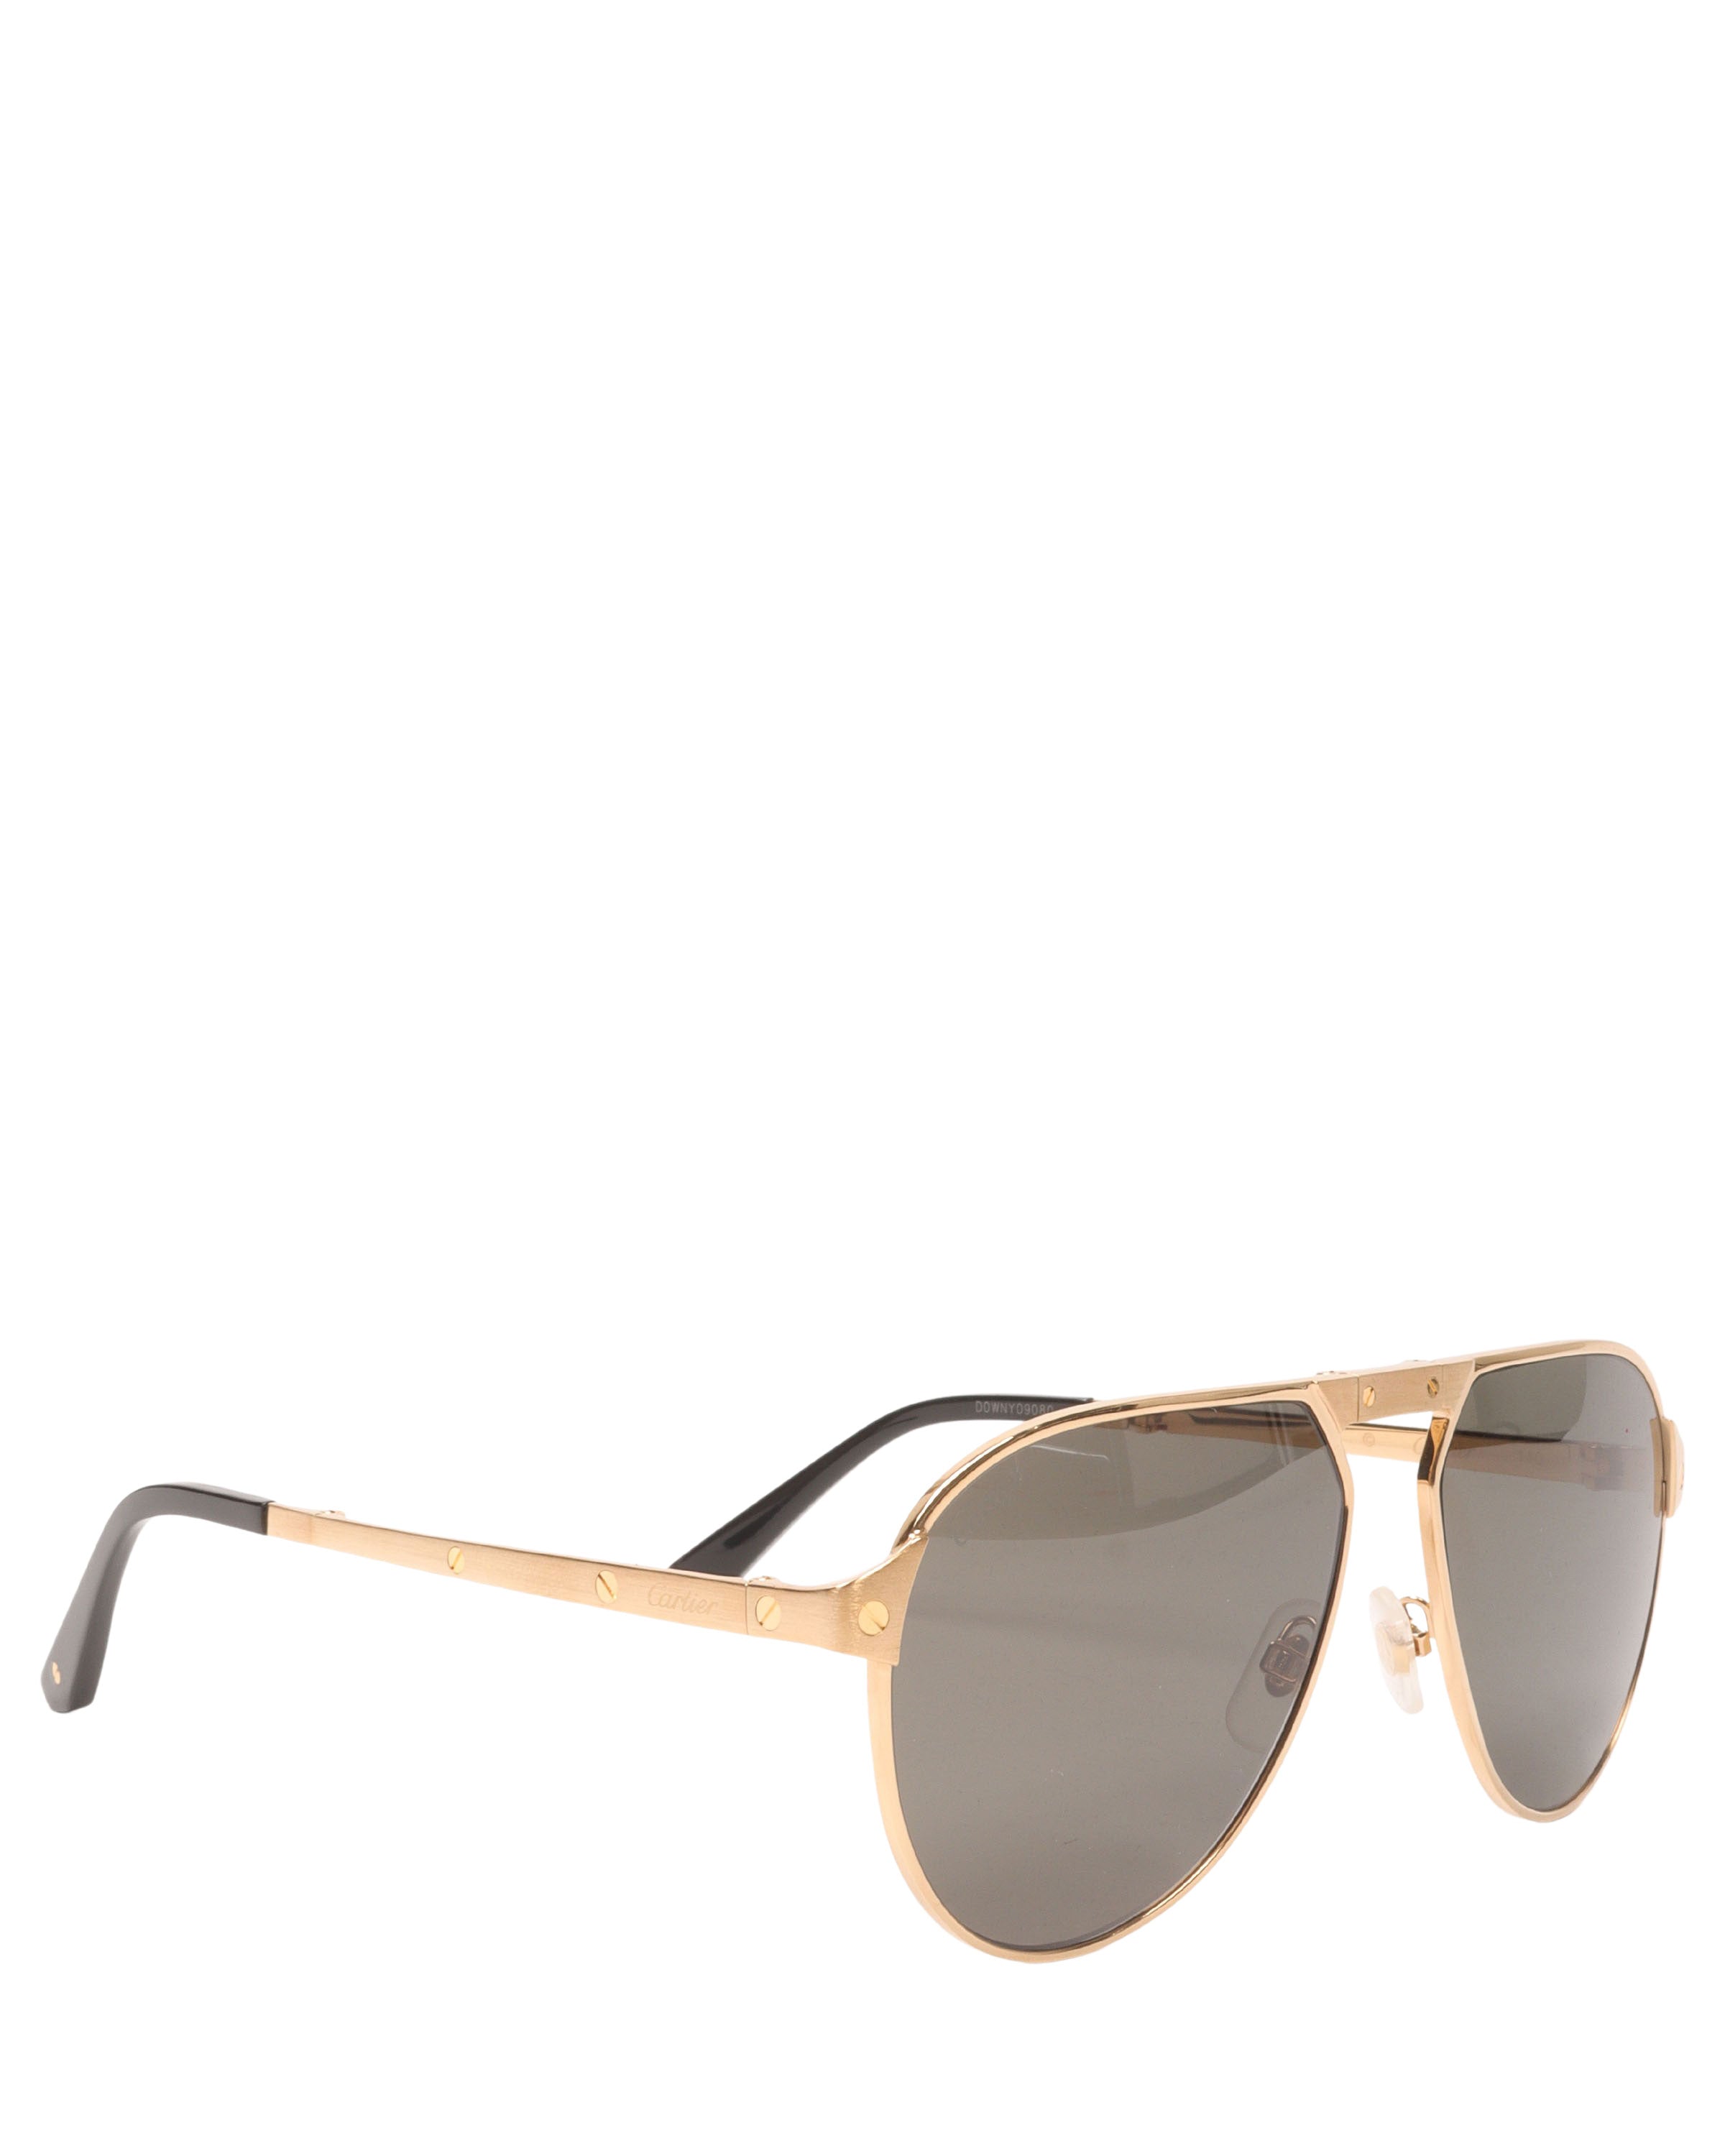 Cartier Gold Frame Aviator Sunglasses